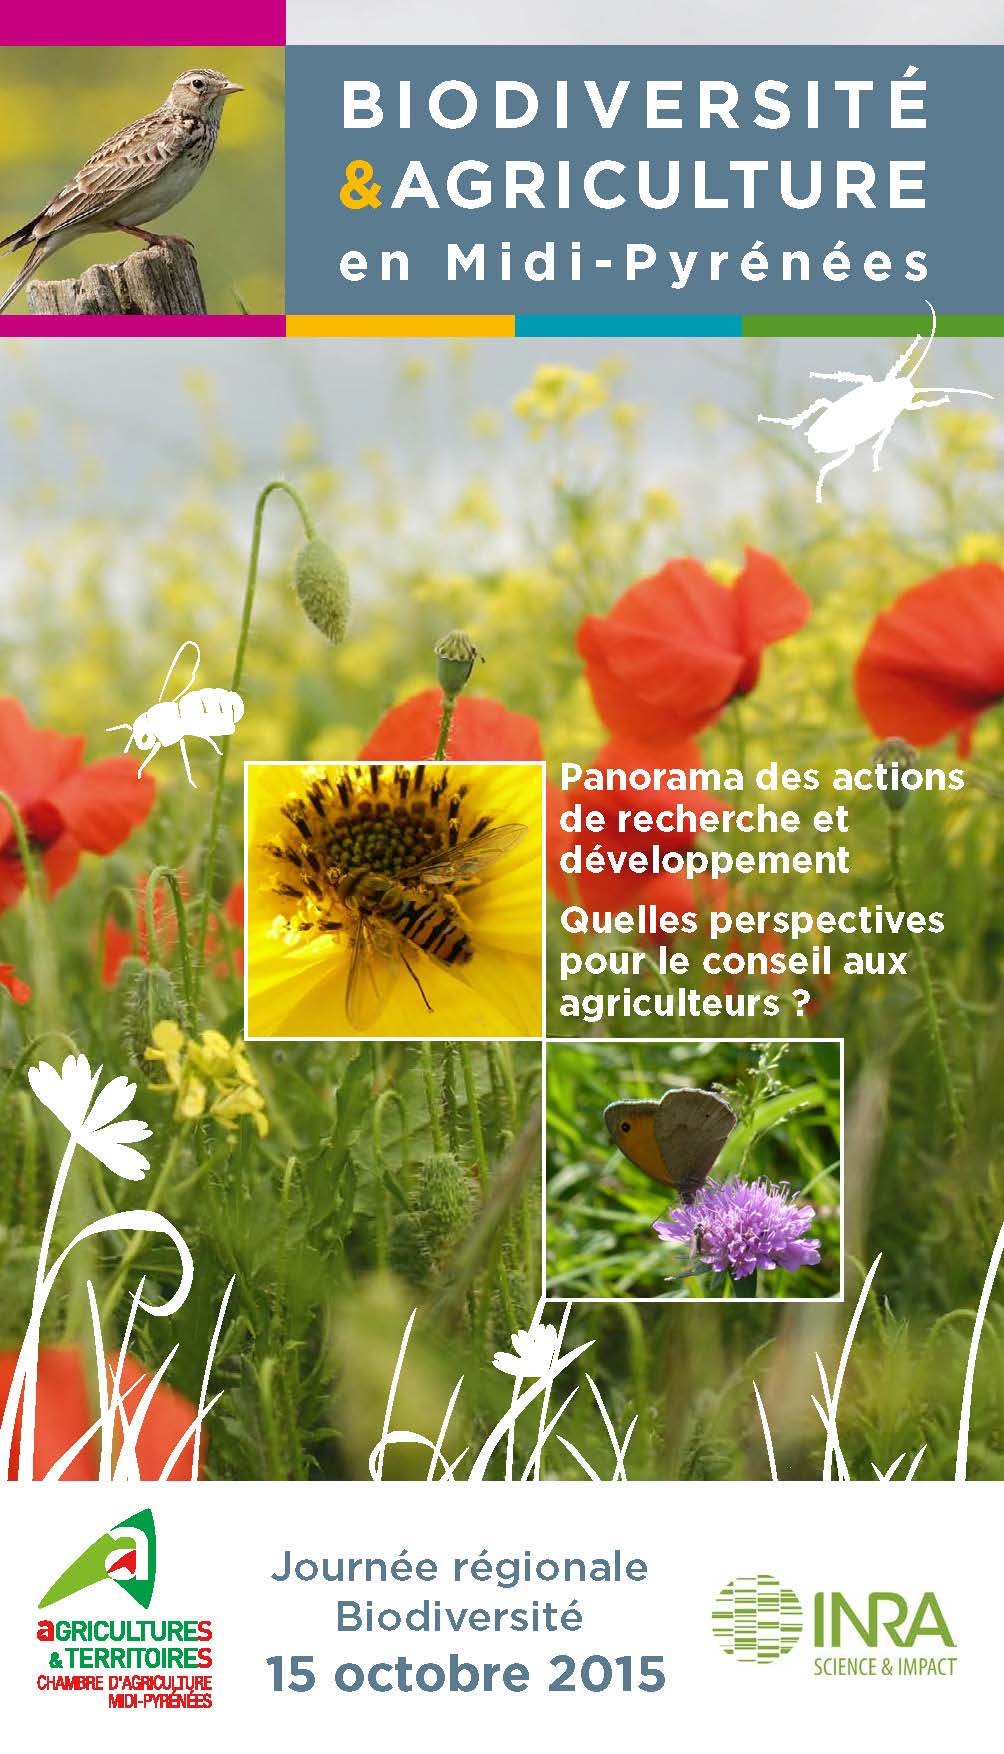 Biodiversité et Agriculture : panorama des actions de recherche et développement. Quelles perspectives pour le conseil aux agriculteurs ?